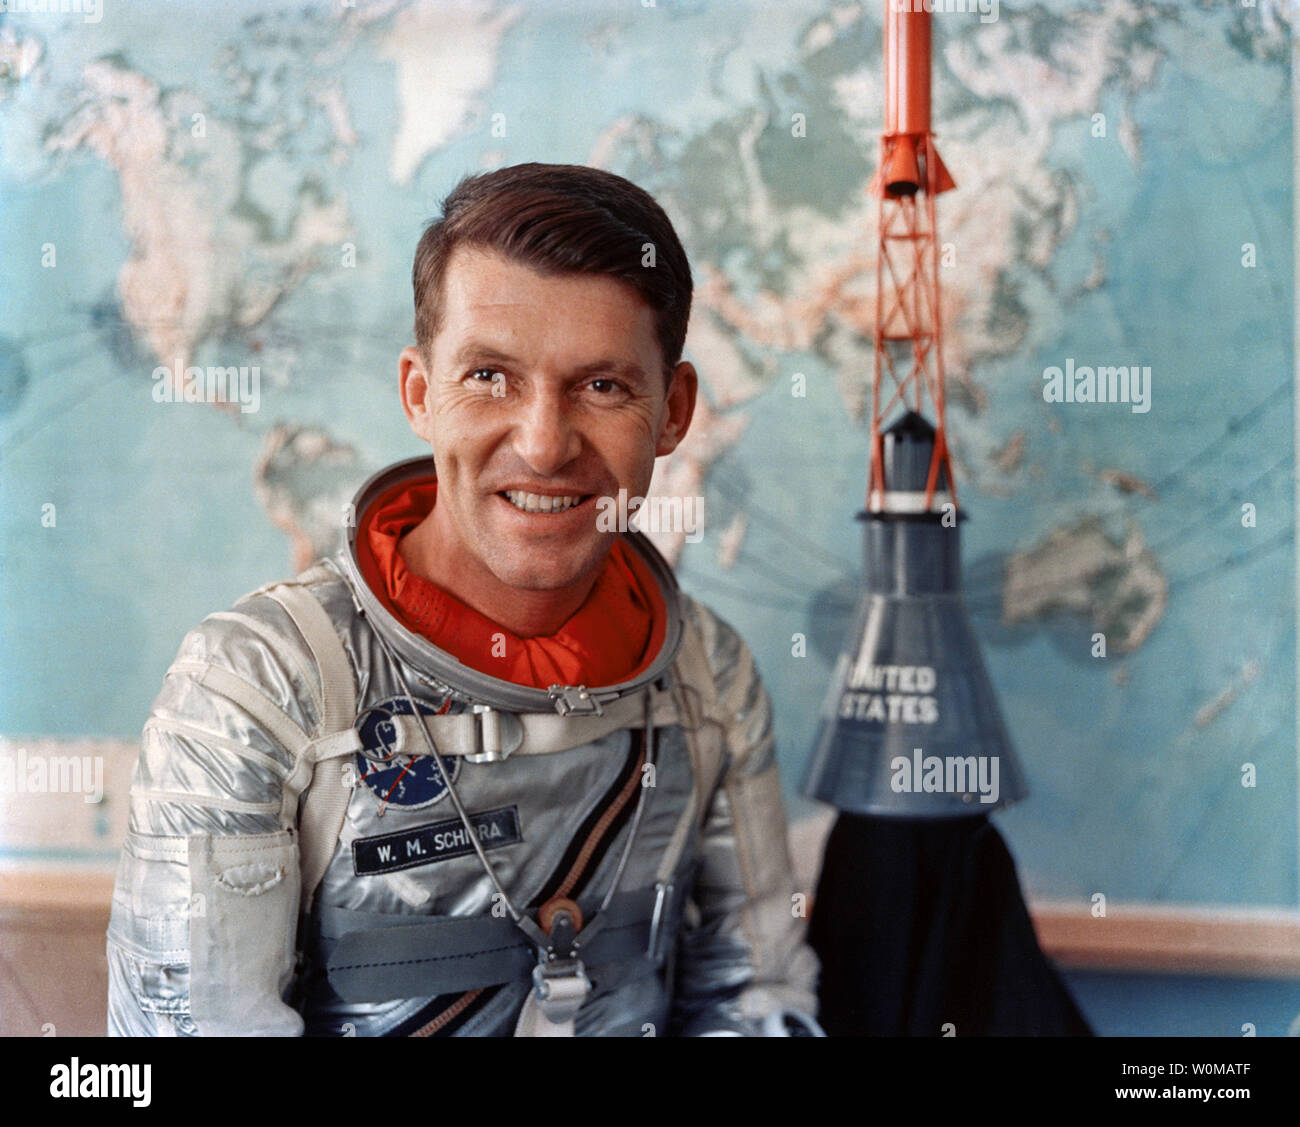 Astronauta americano Wally Schirra, uno l'originale Mercury sette astronauti, morì all età di 84 a San Diego il 2 maggio 2007. Schirra era l'unico astronauta a volare in mercurio, Gemini e Apollo programmi spaziali. Egli è illustrata in un documento non datato foto nel suo Mercurio tuta spaziale. (UPI foto/NASA/file) Foto Stock